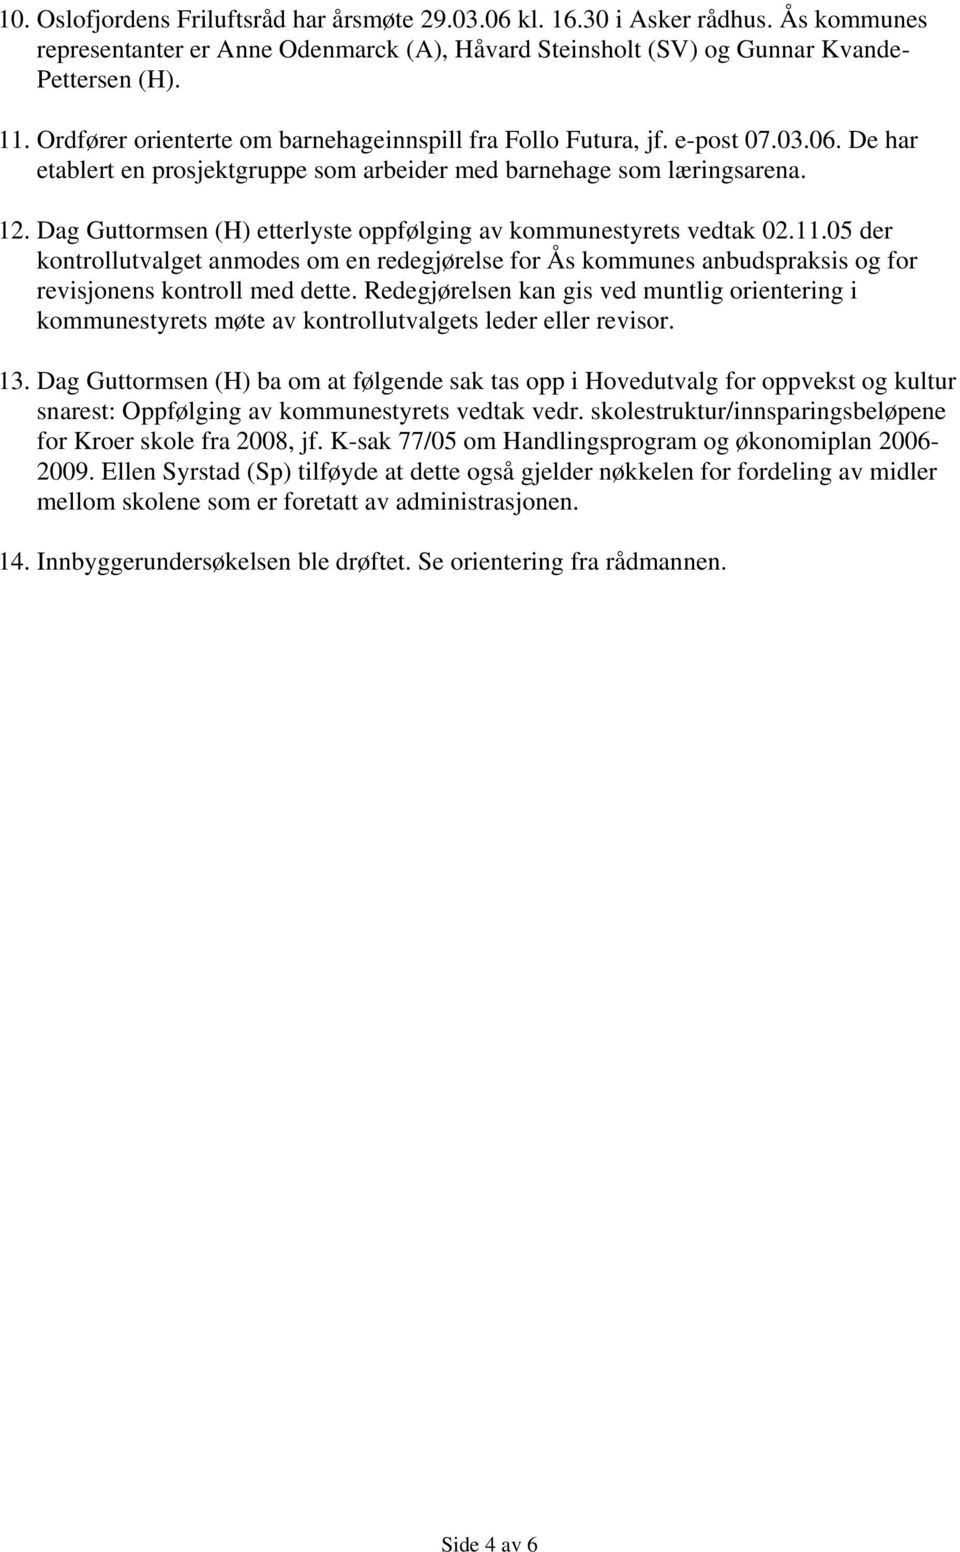 Dag Guttormsen (H) etterlyste oppfølging av kommunestyrets vedtak 02.11.05 der kontrollutvalget anmodes om en redegjørelse for Ås kommunes anbudspraksis og for revisjonens kontroll med dette.